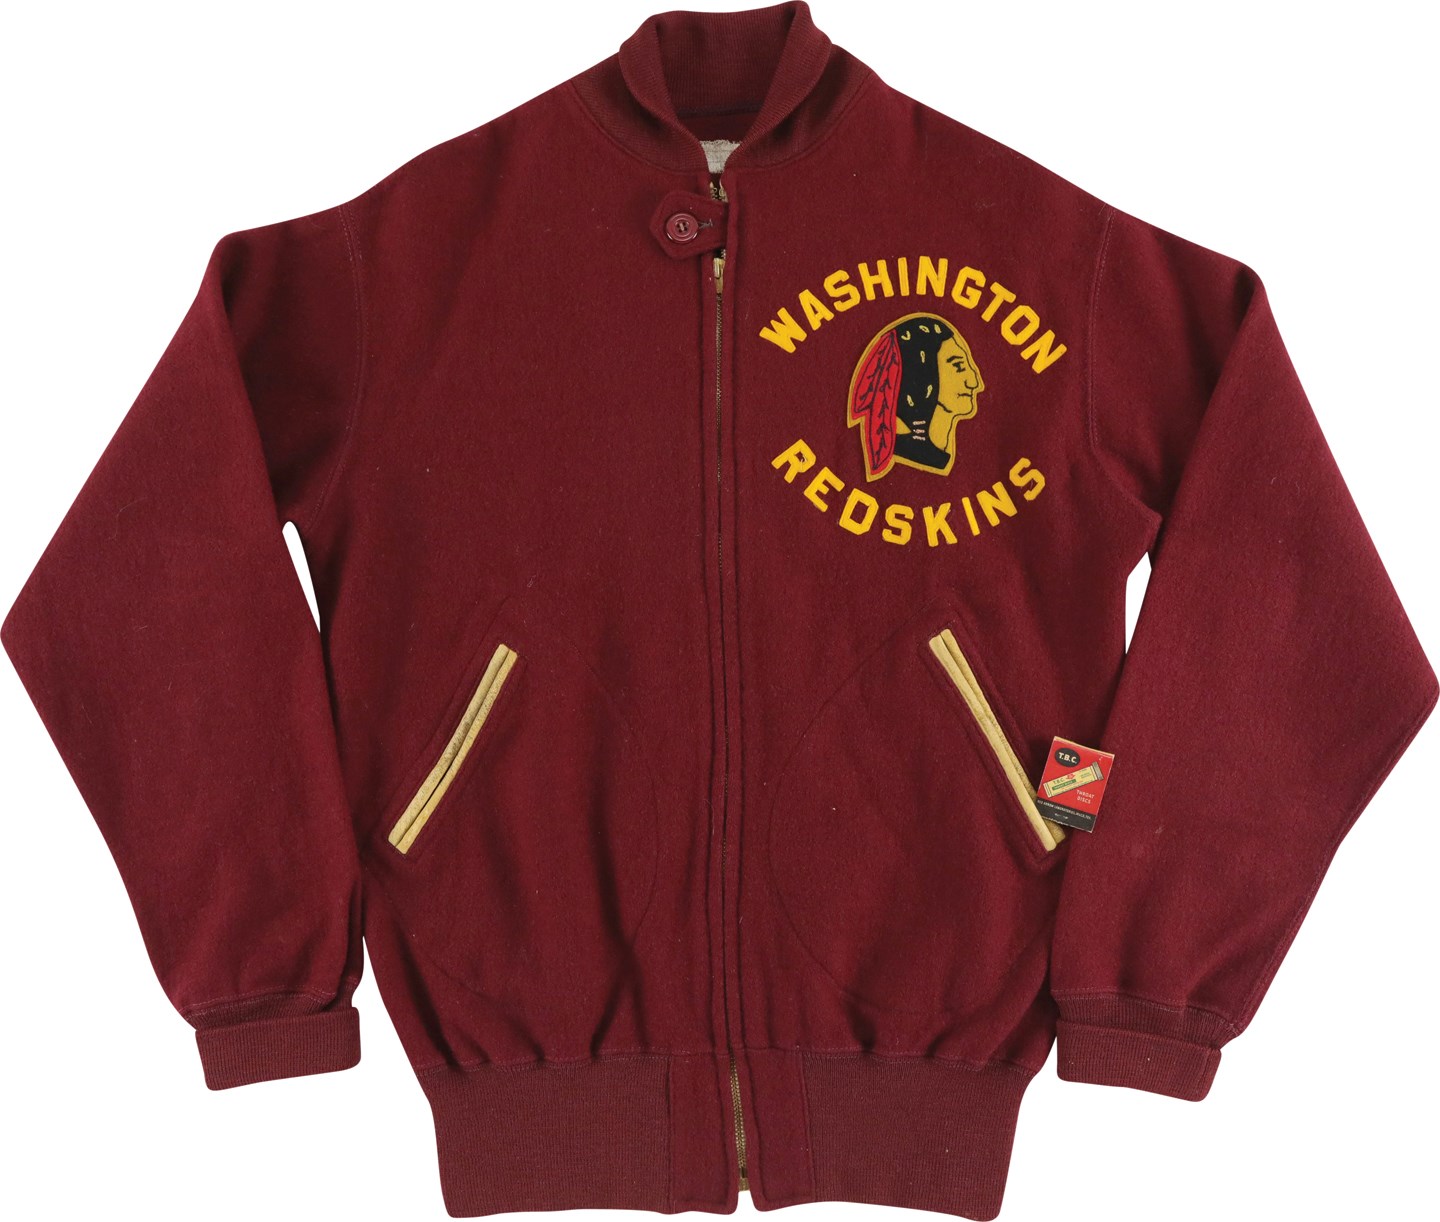 - 1940s Sammy Baugh Washington Redskins Jacket (Baugh Letter)